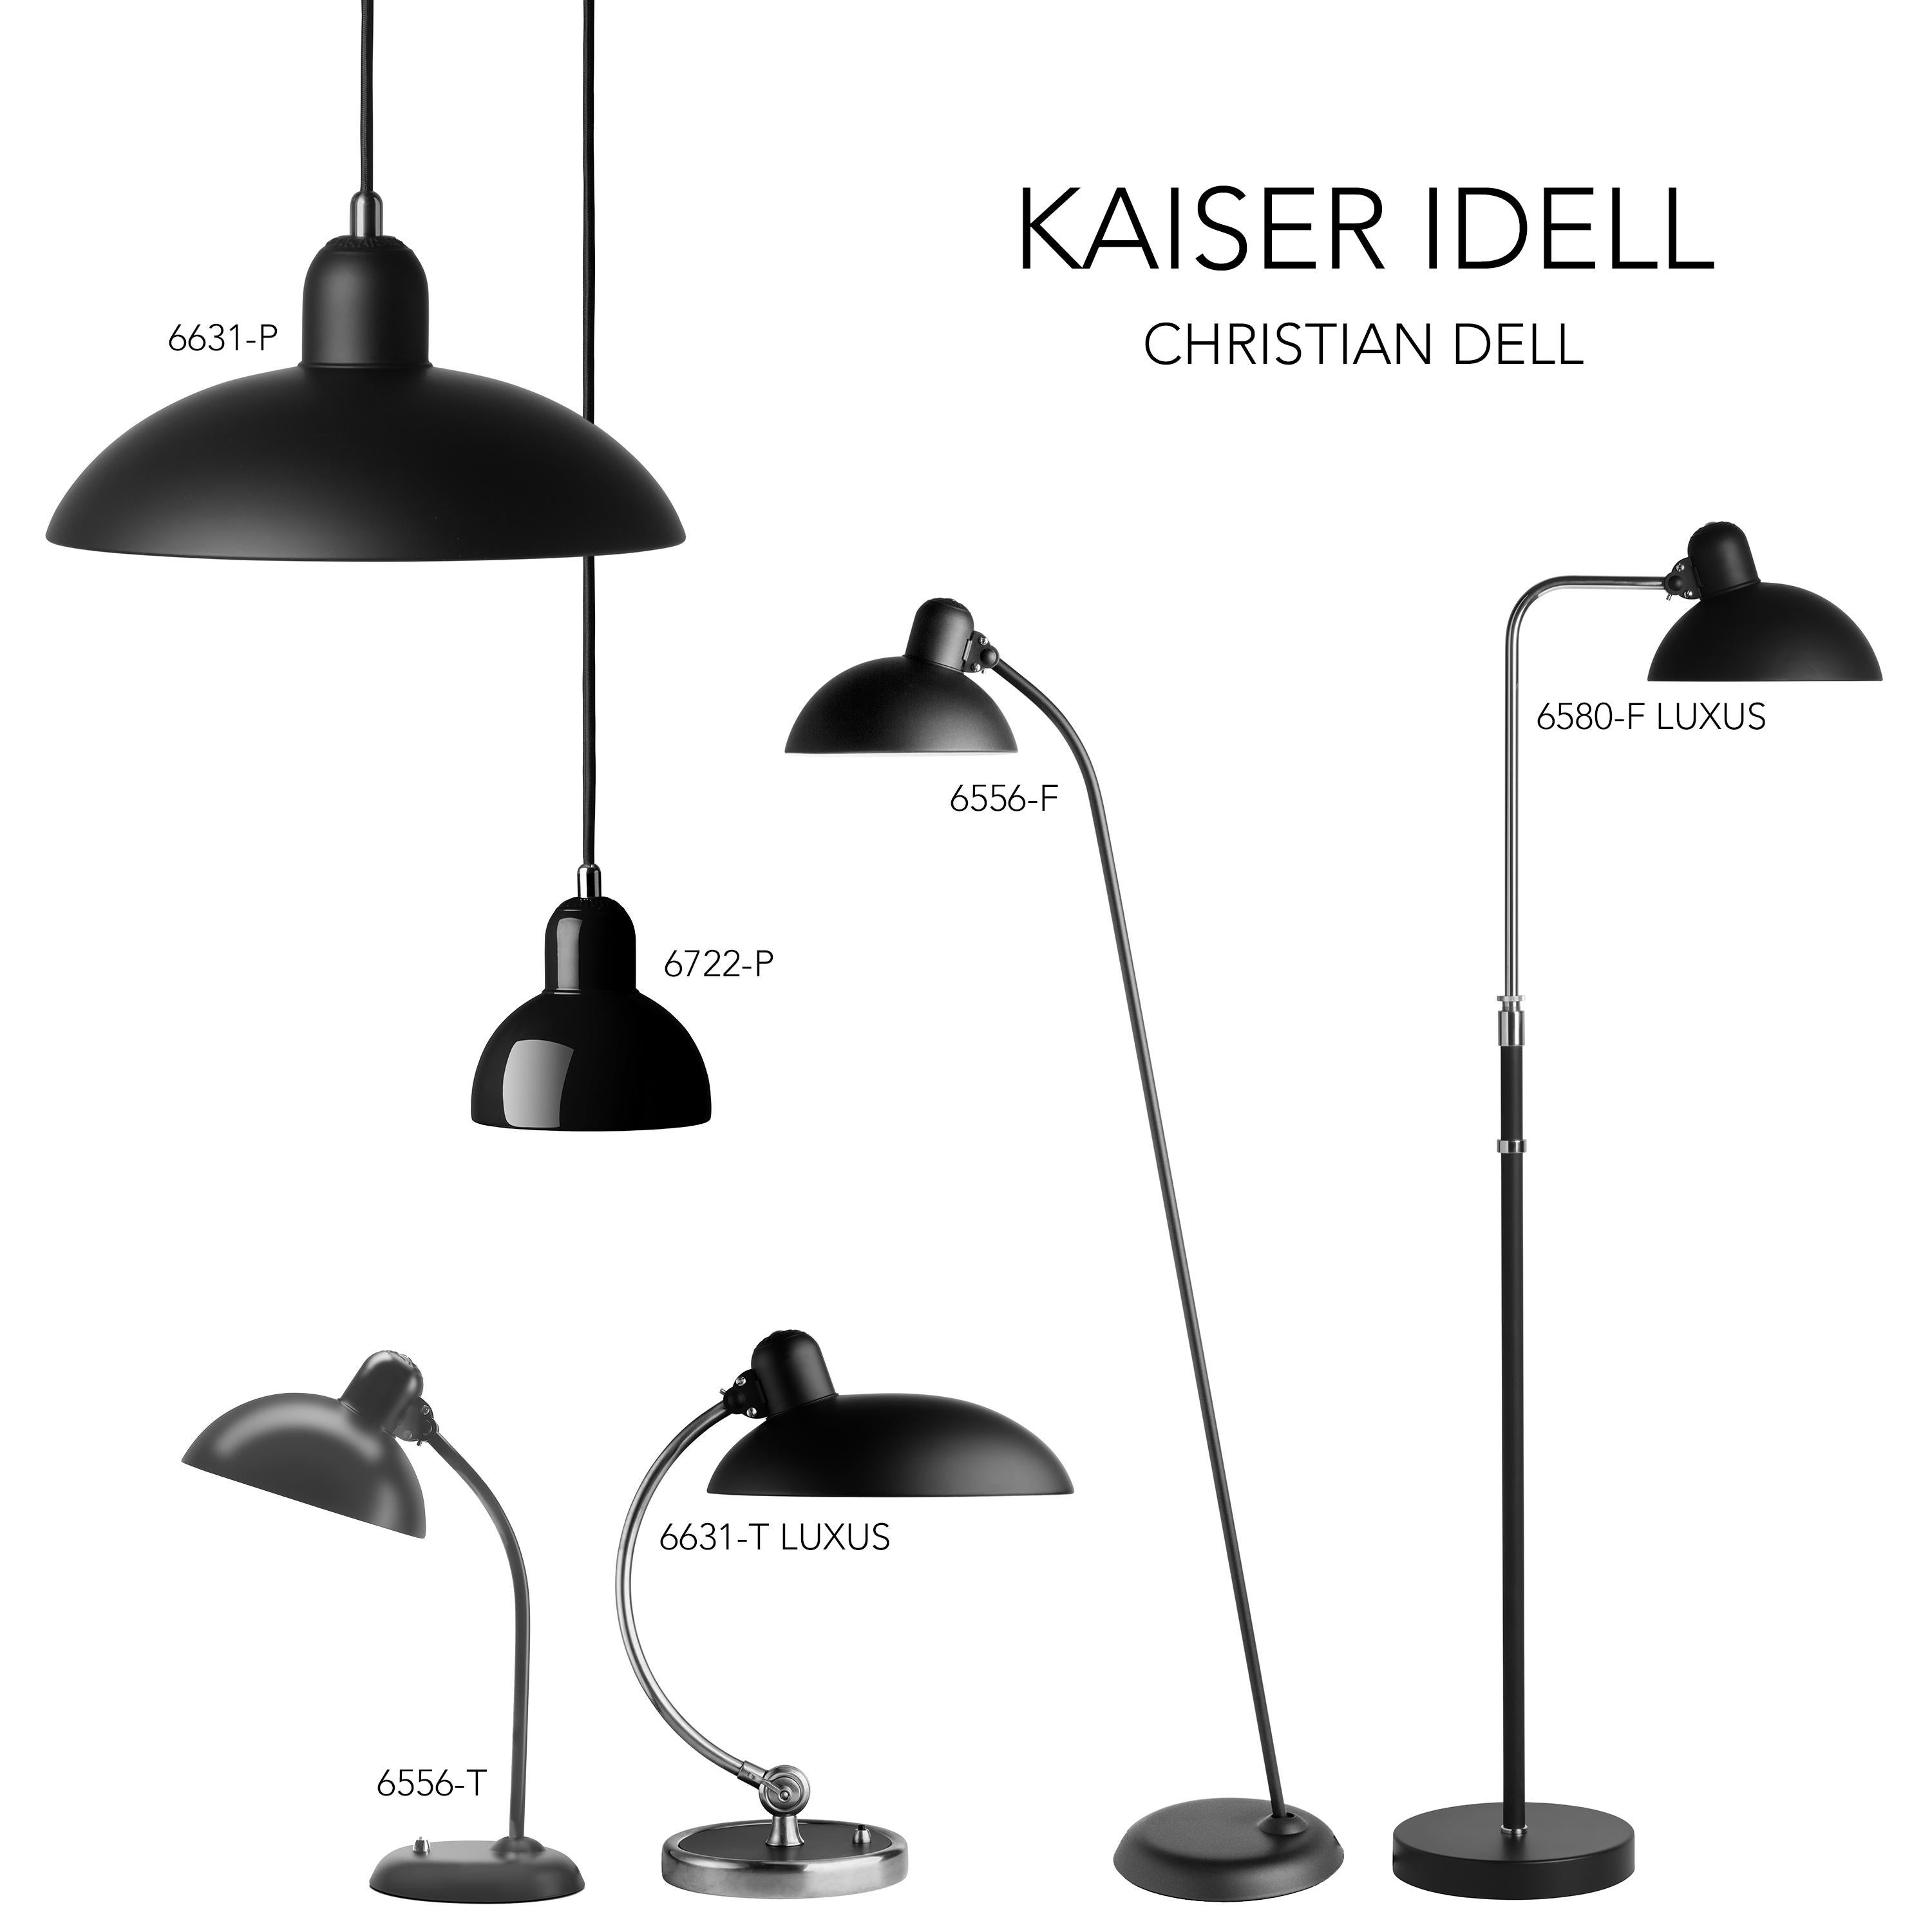 Christian Dell 'Kaiser Idell 6631-P' Pendant for Fritz Hansen in Matte Black For Sale 8